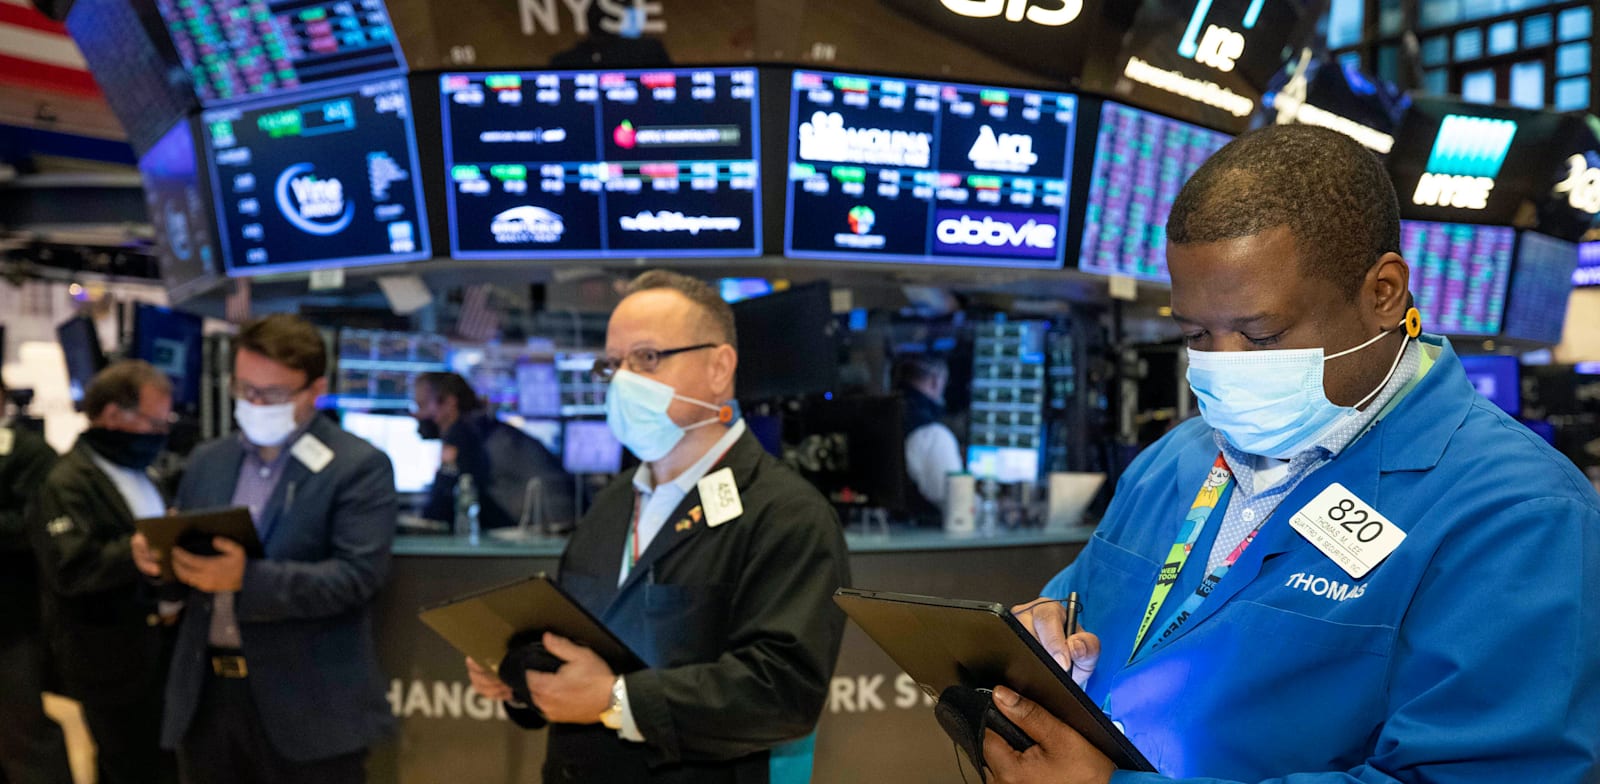 סוחרים בוול סטריט עוקבים אחרי הנעשה במדדים / צילום: Associated Press, Colin Ziemer/New York Stock Exchange